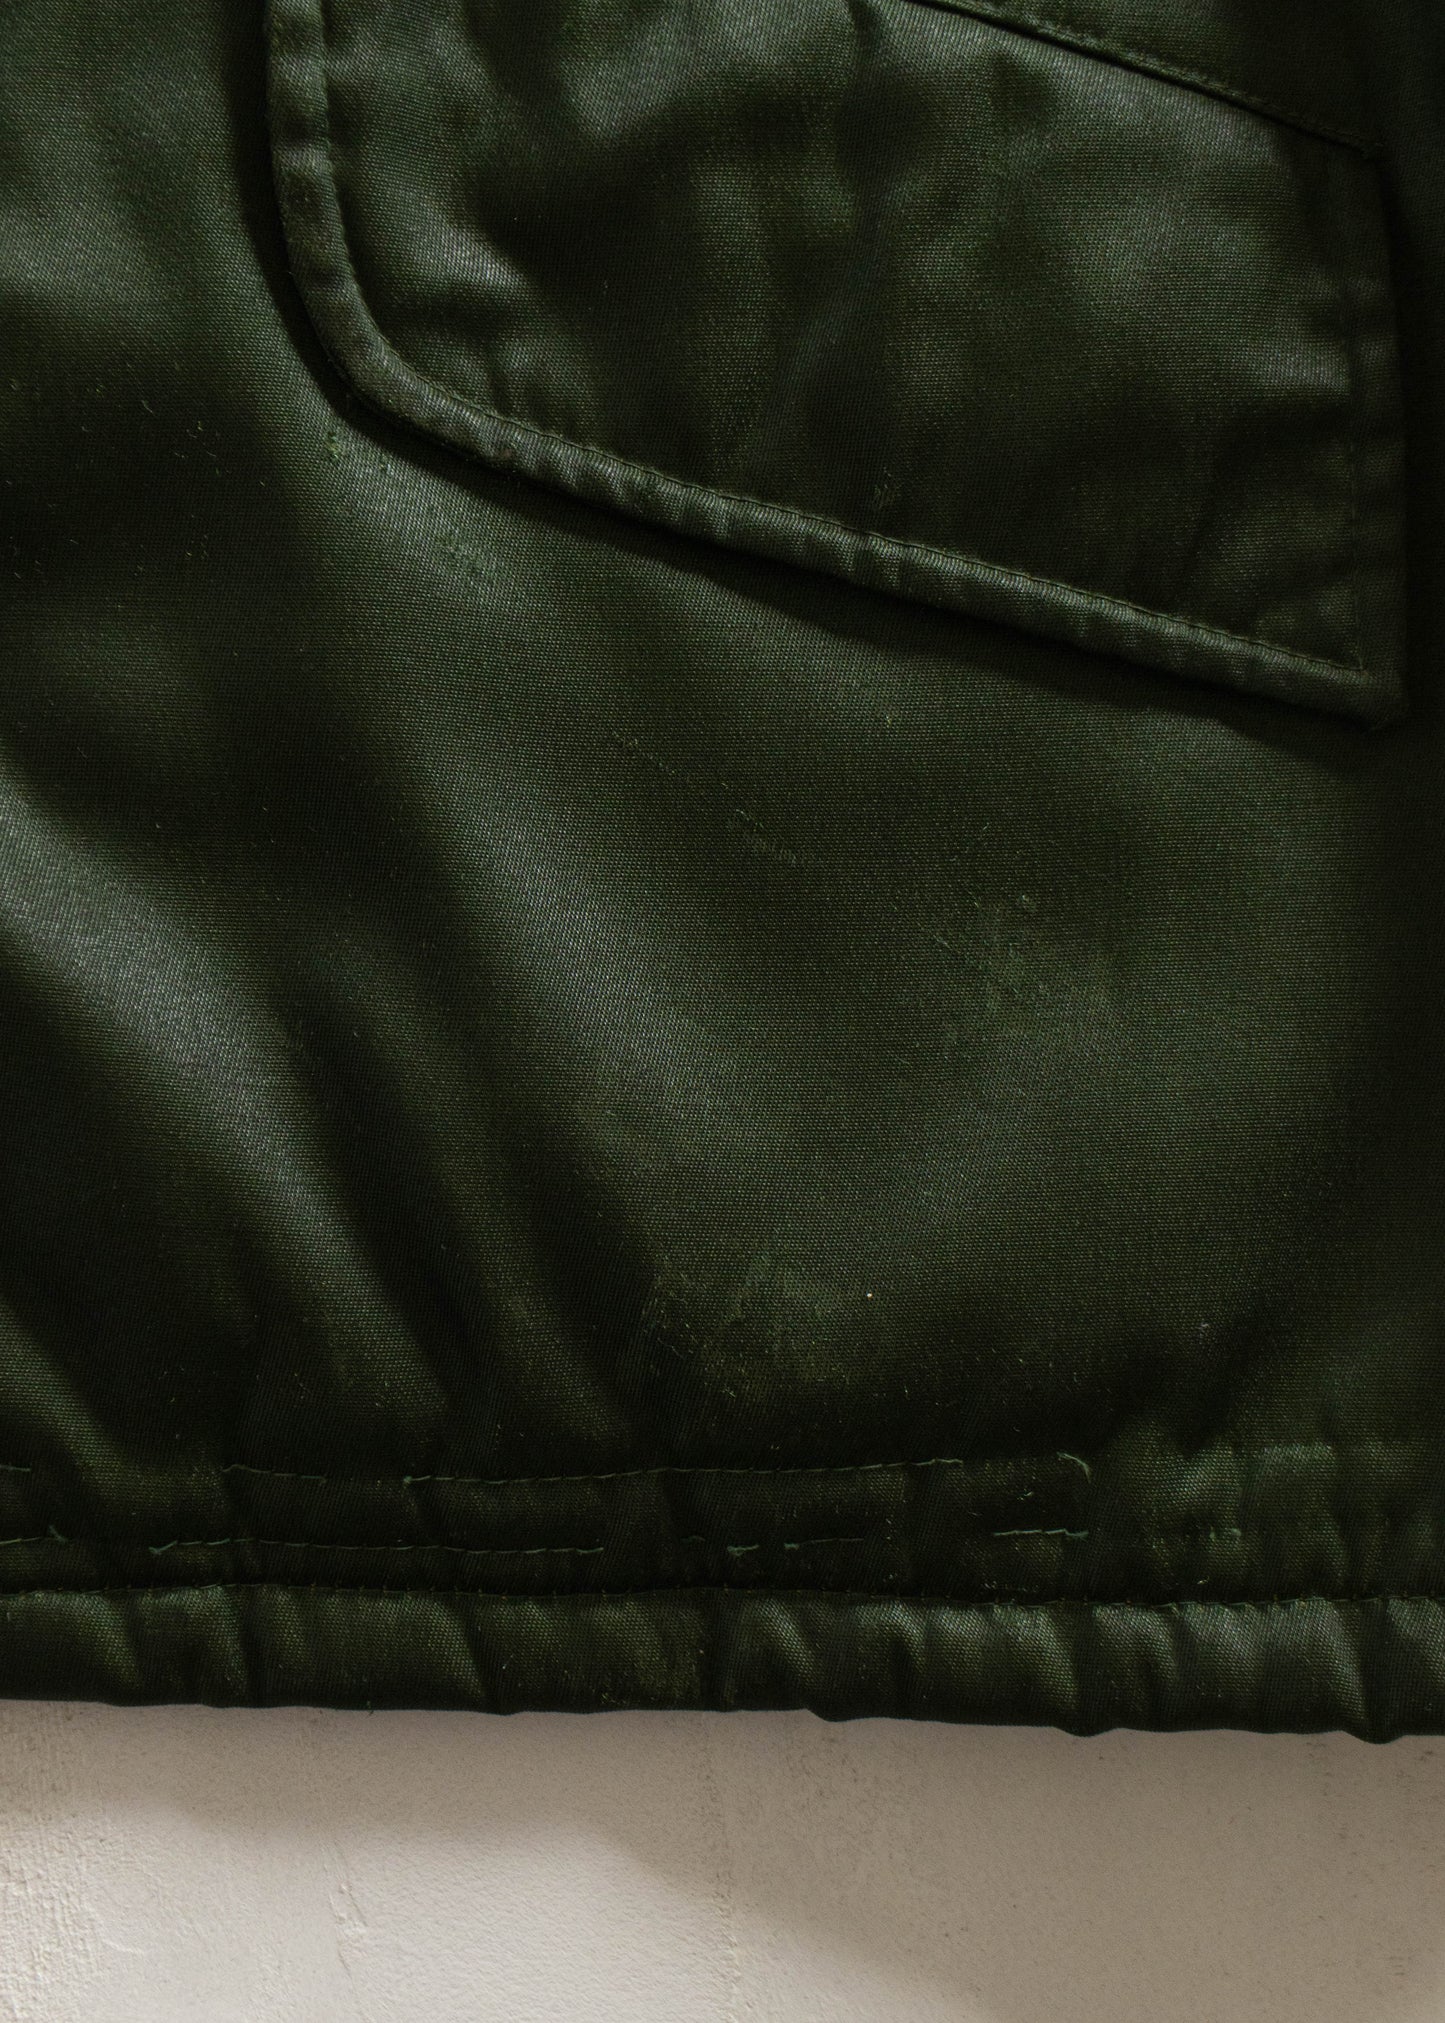 Vintage Nylon Jacket Size L/XL